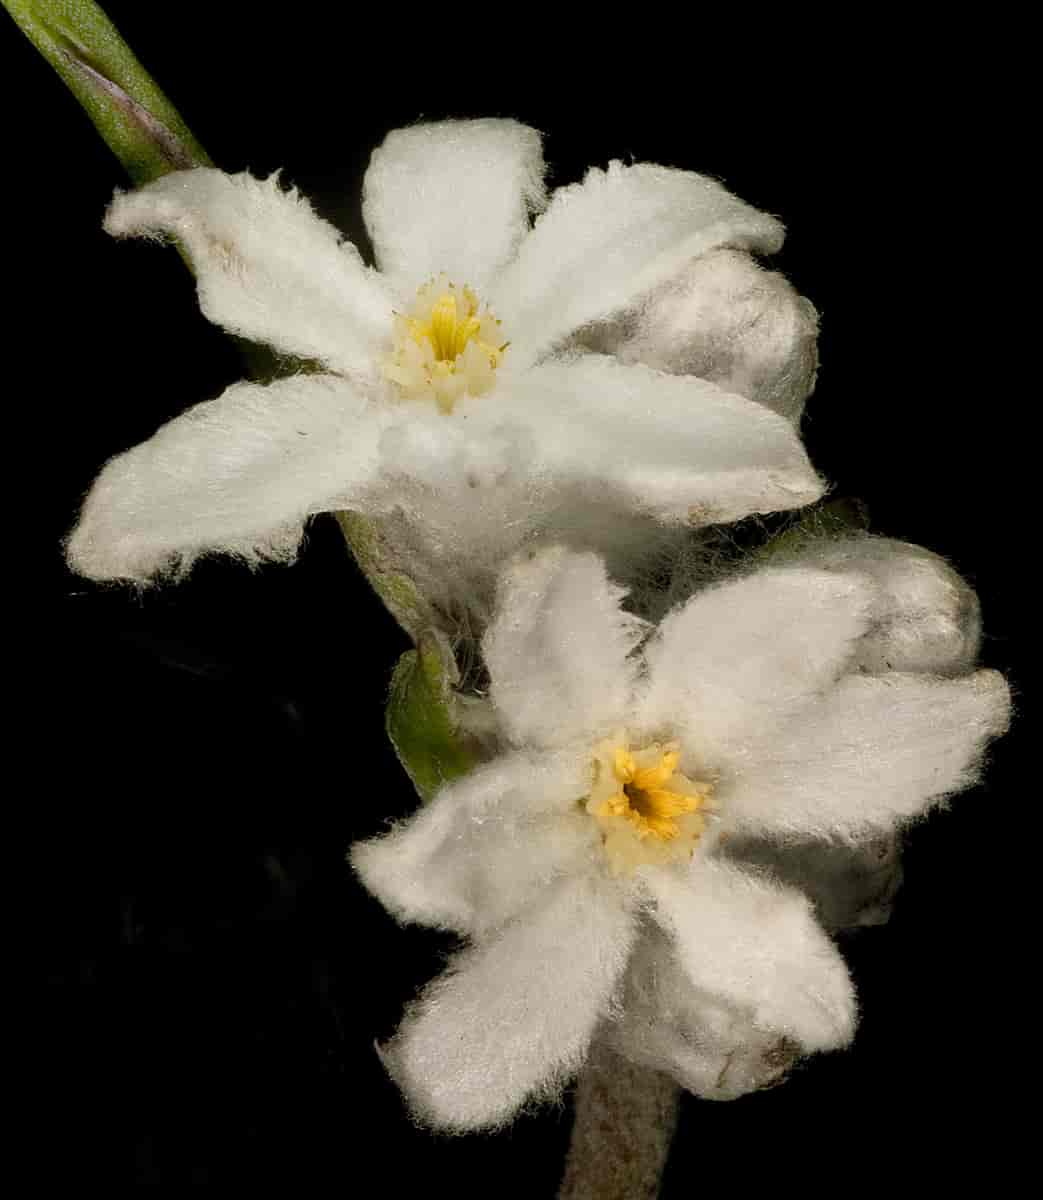 Haemodoraceae